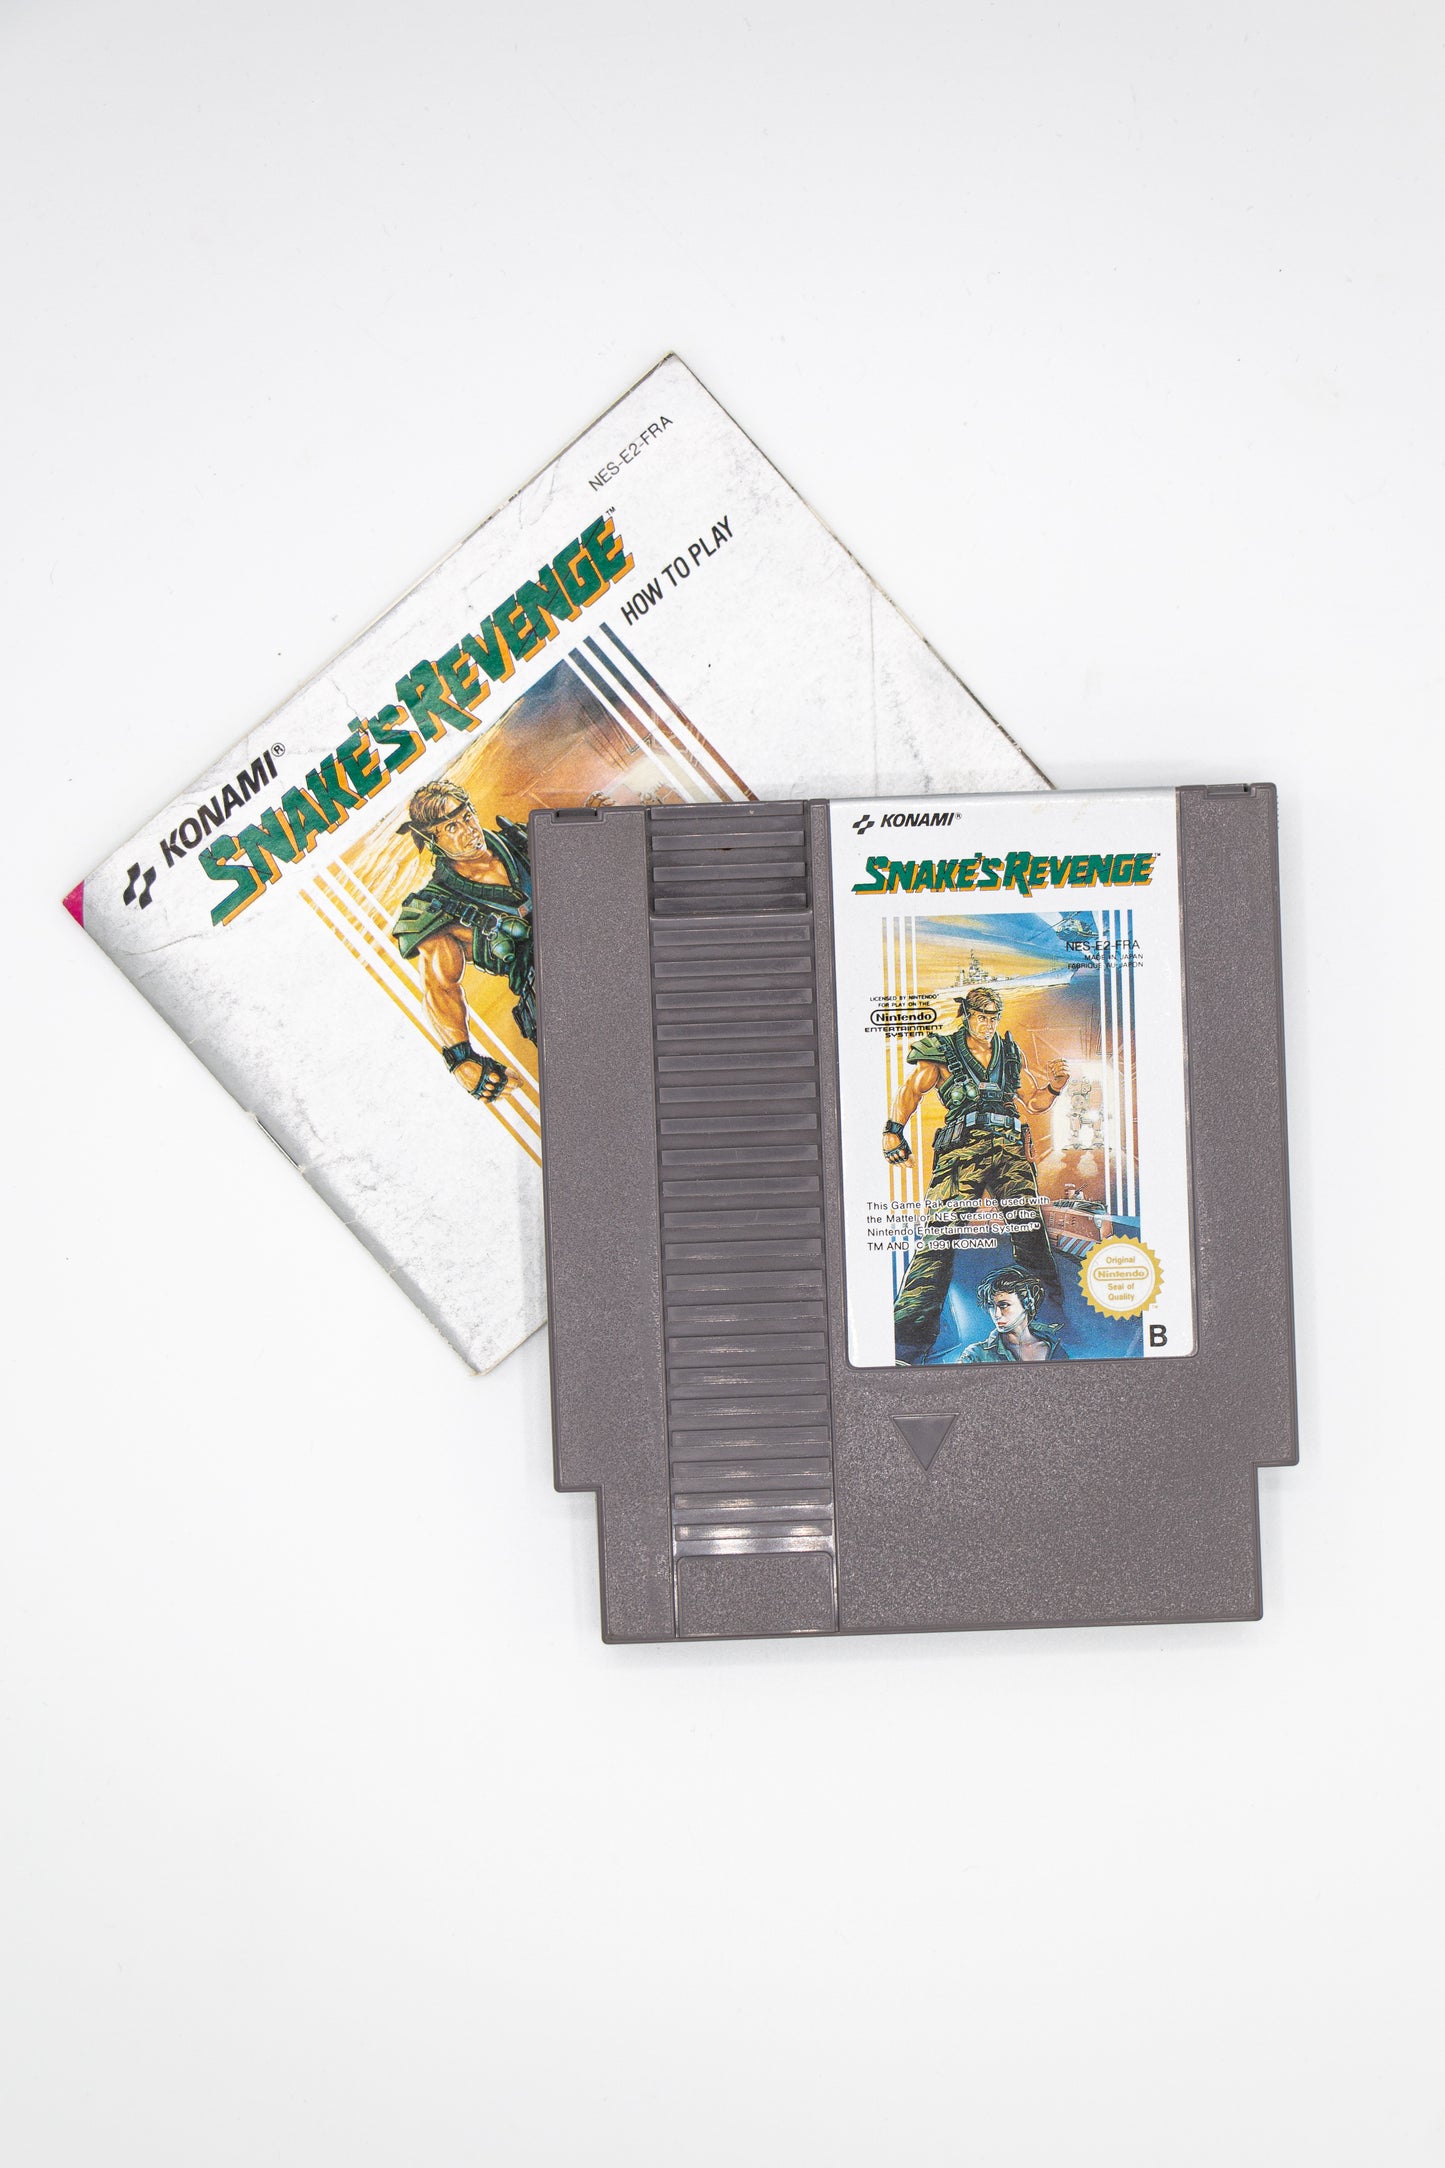 Snake's Revenge NES Cartridge and Manual